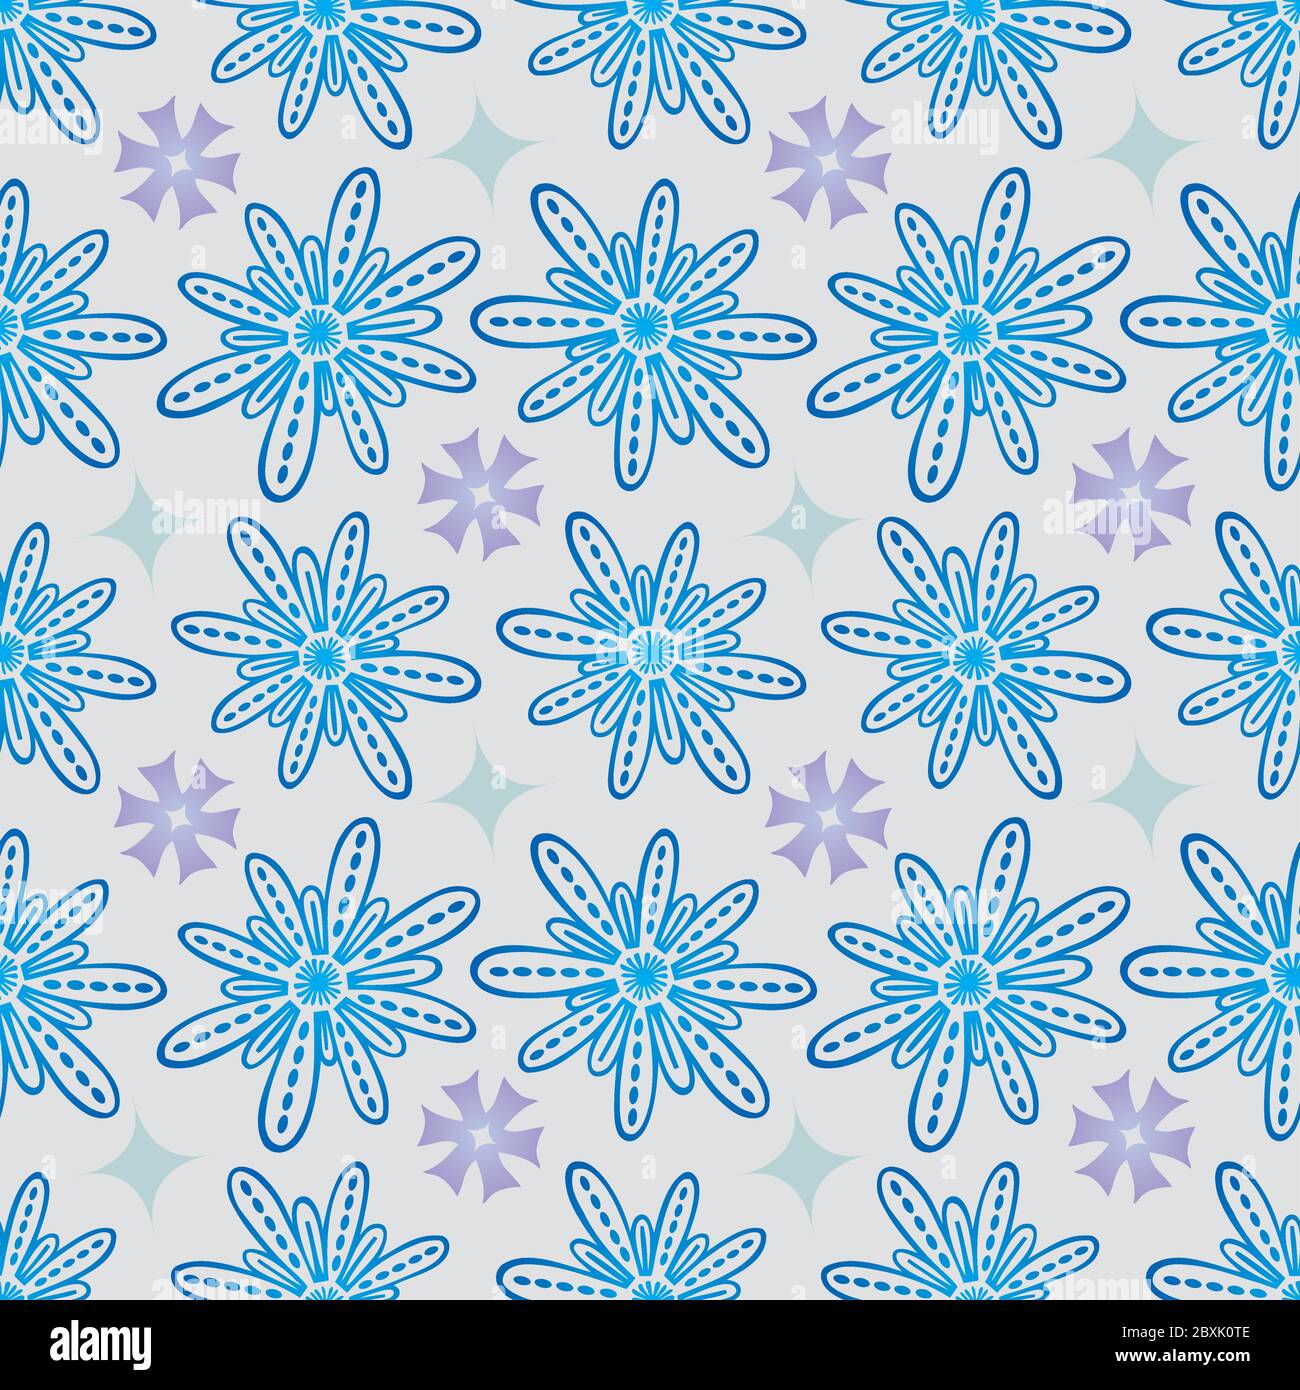 Blume Nahtloses Muster in Blau und Lila - Pastell Farben auf grauem Hintergrund Stock Vektor